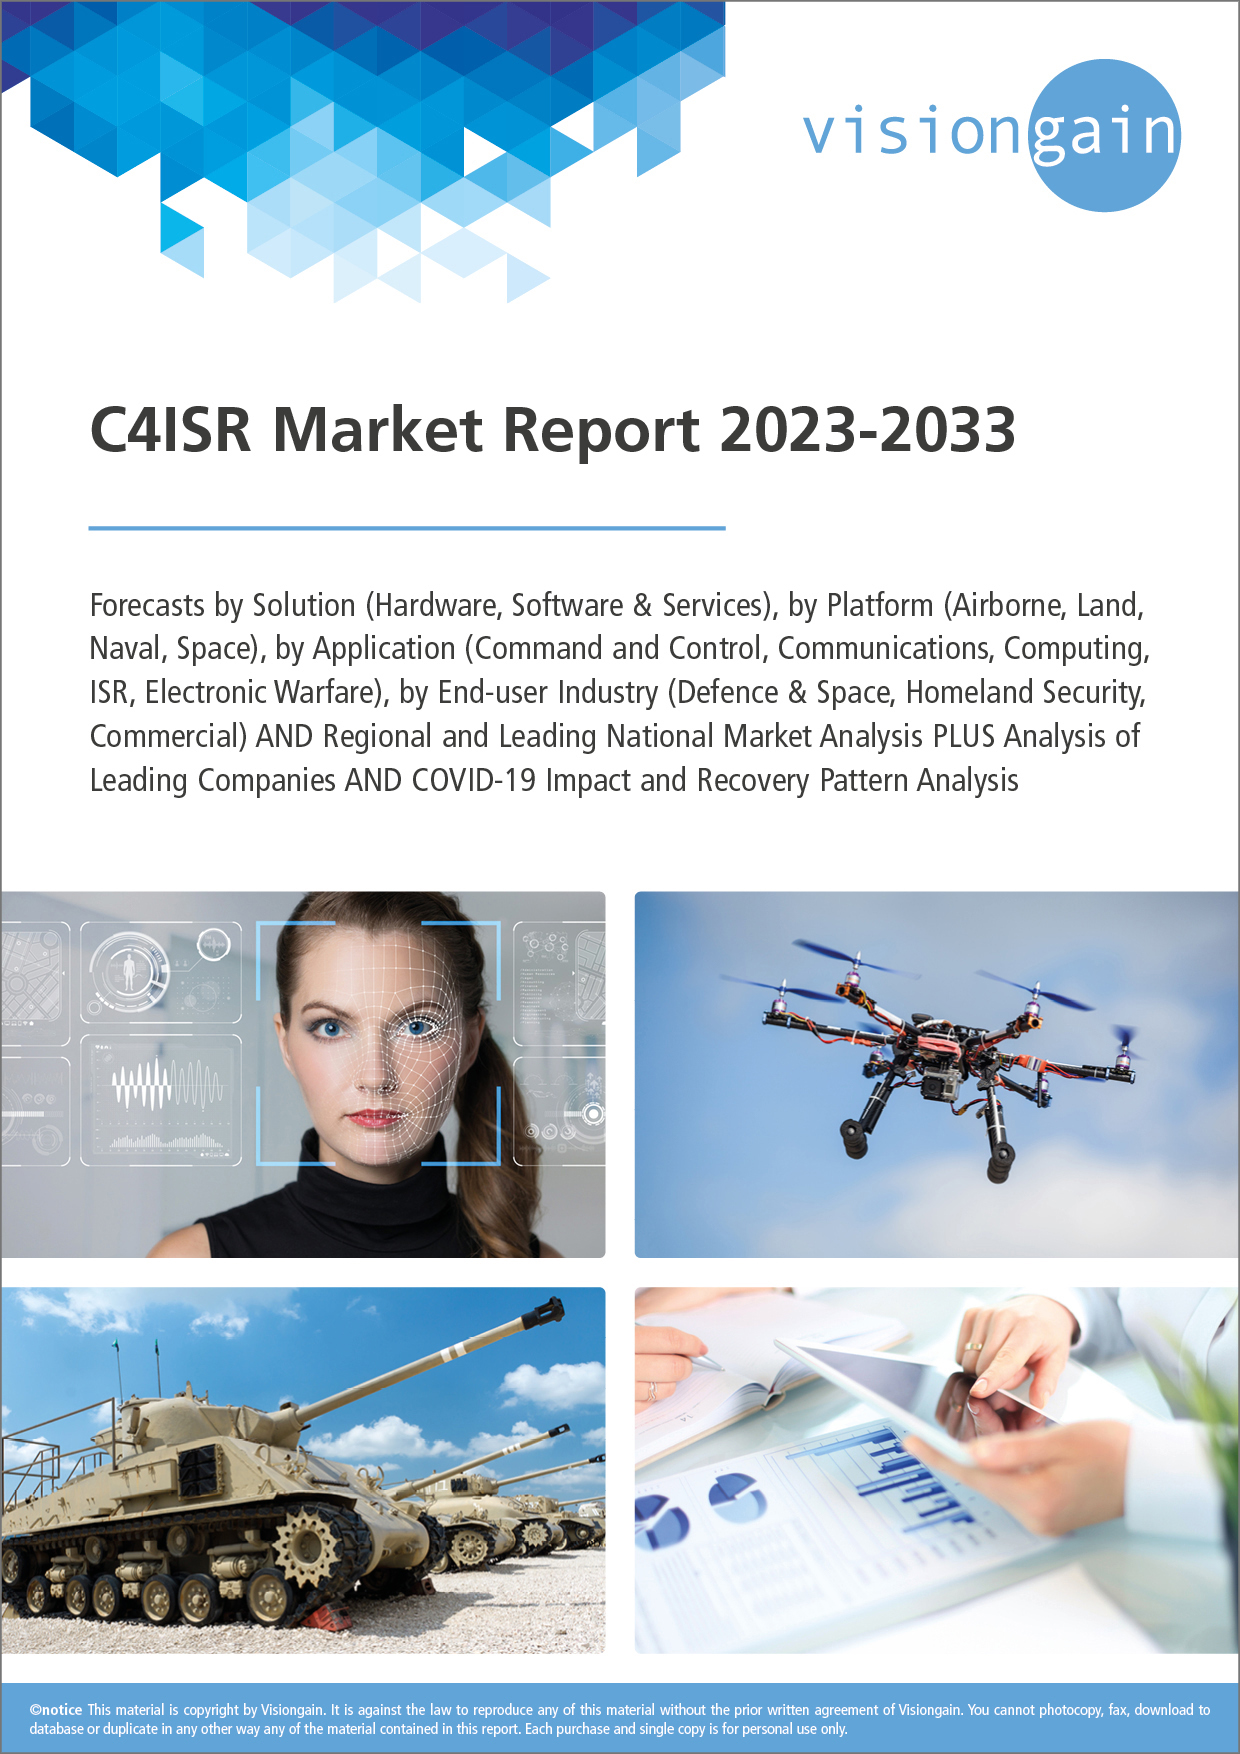 C4ISR Market Report 2023-2033